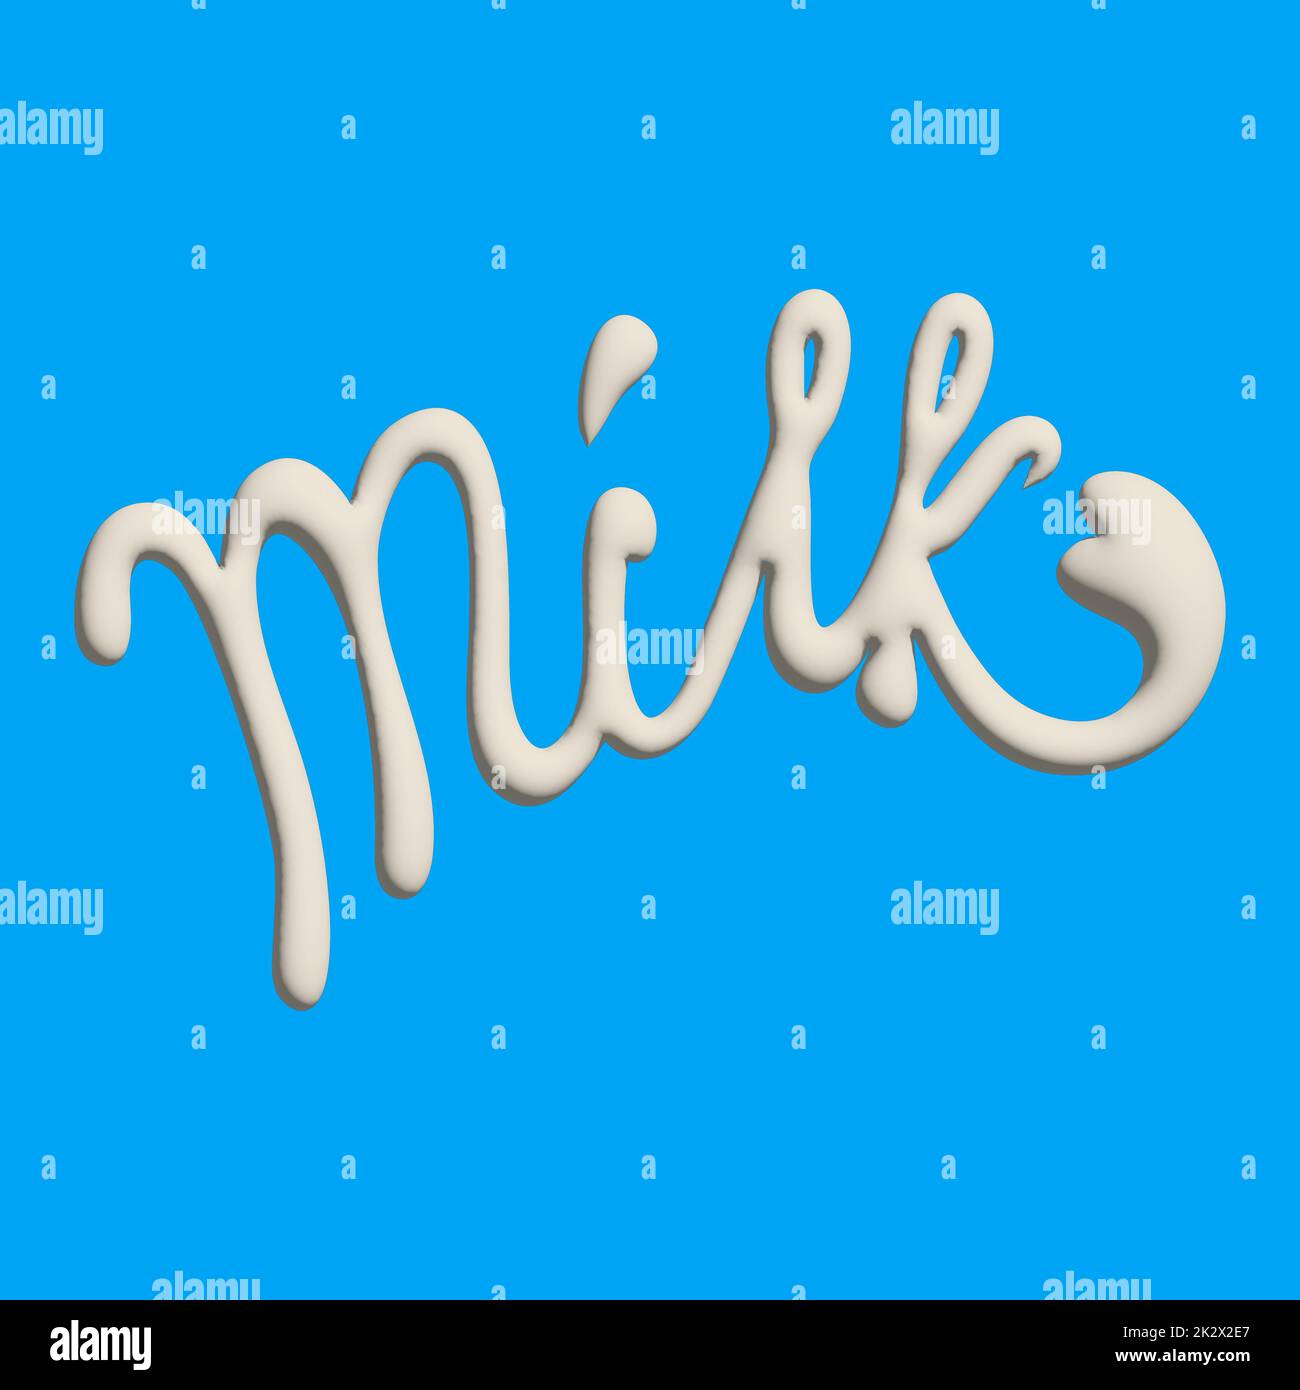 Testo scritto con latte, schizzi e gocce. Design elegante per un marchio, un'etichetta o una pubblicità Foto Stock